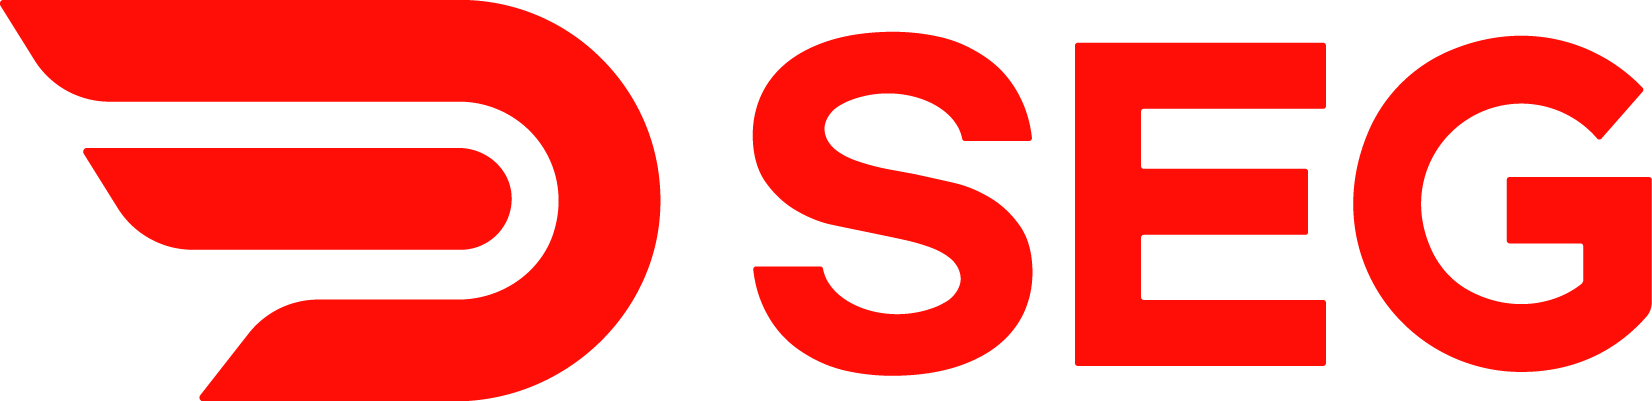 seg logo 2019-red.png